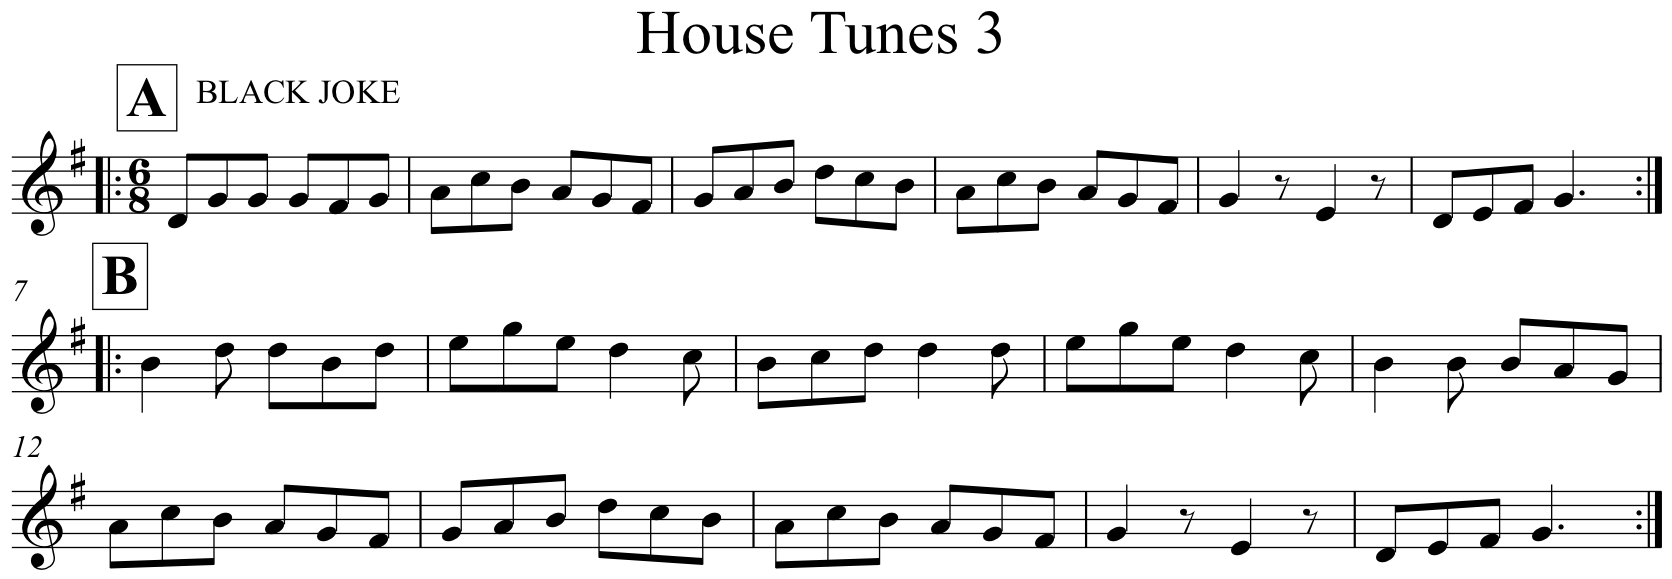 House Tunes 3